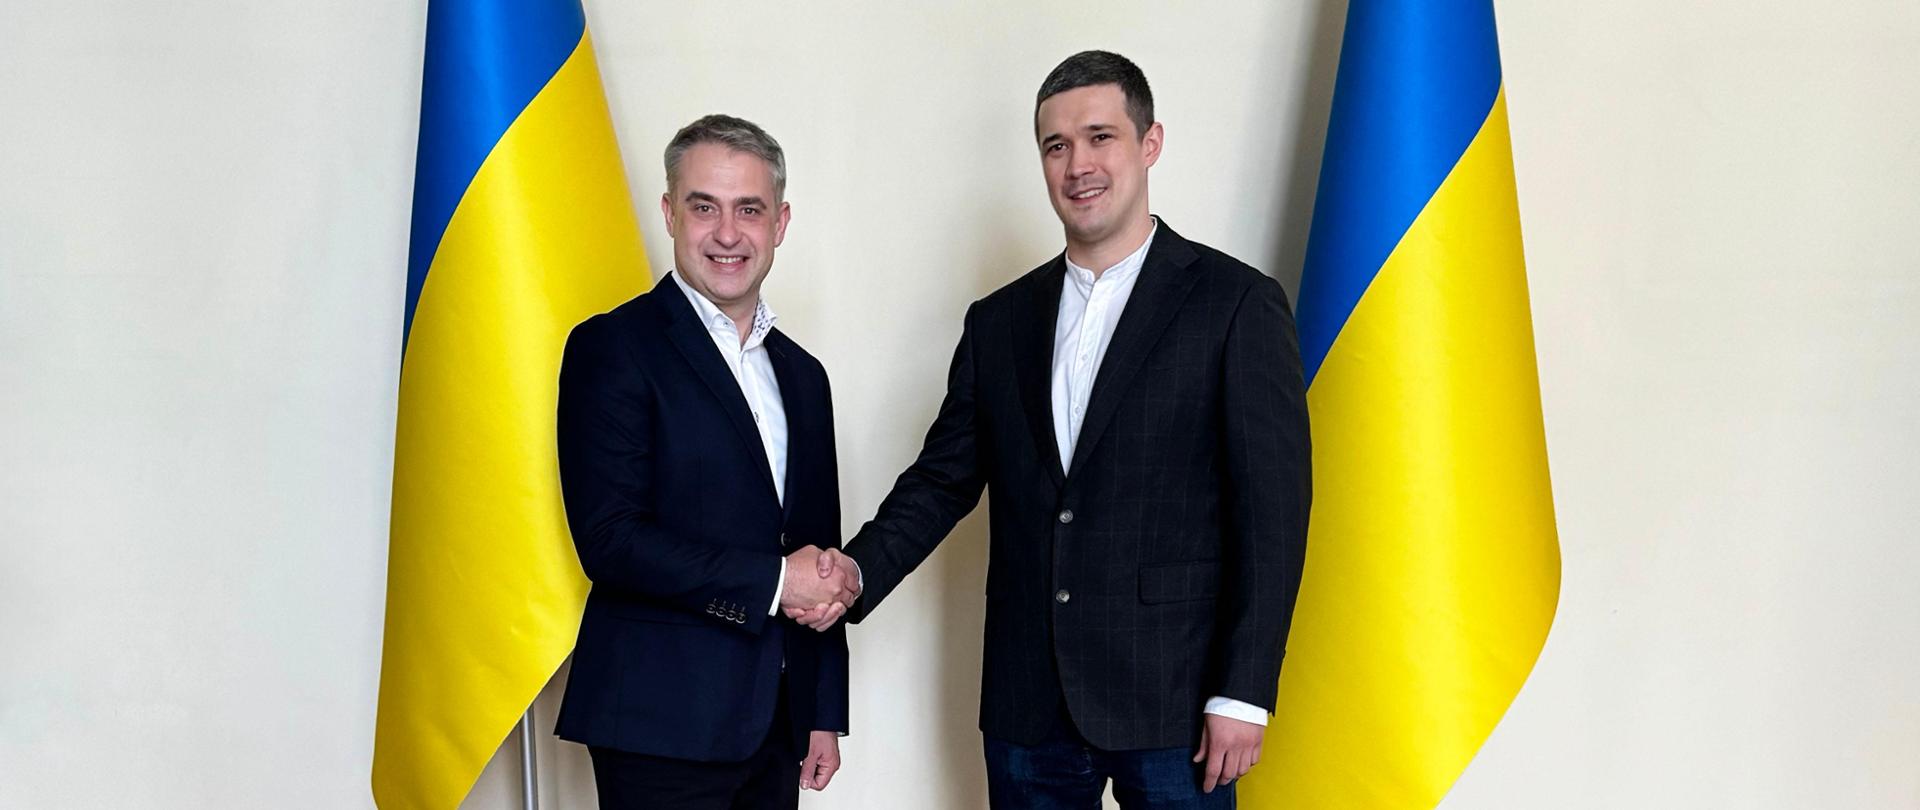 Ukraina i Polska podpisują memorandum o współpracy w zakresie cyfryzacji 